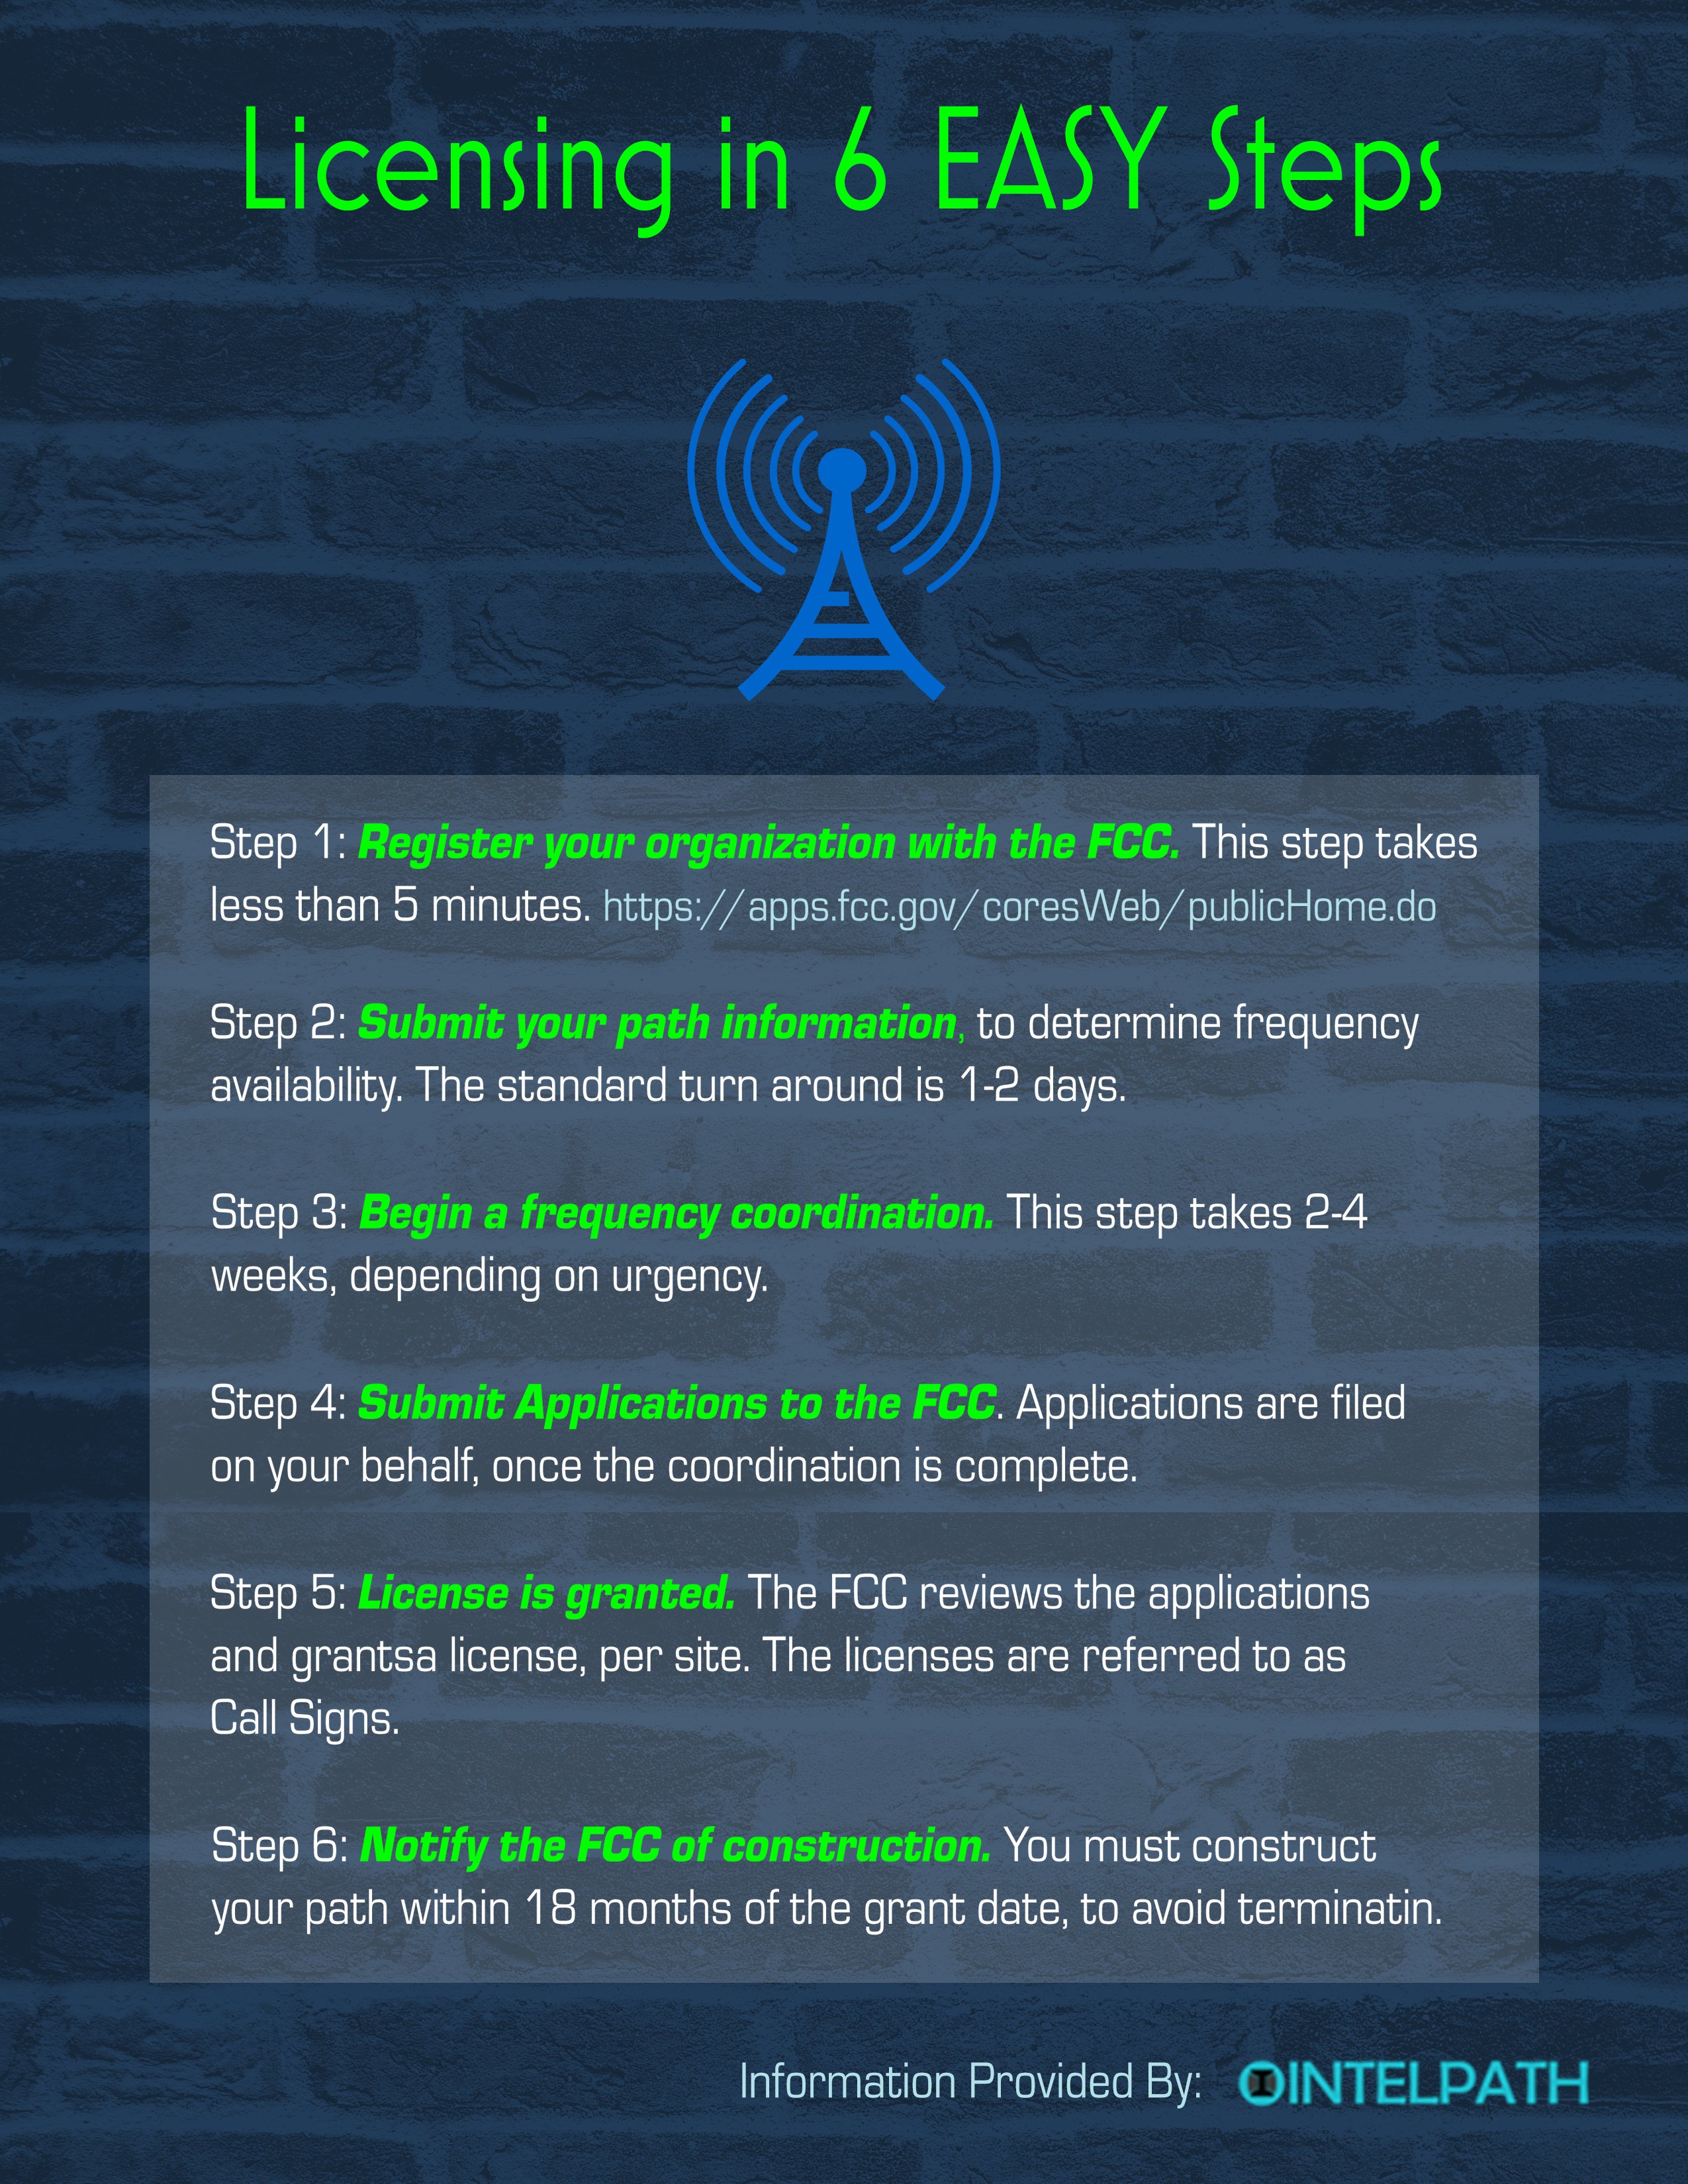 6 steps to a FCC license